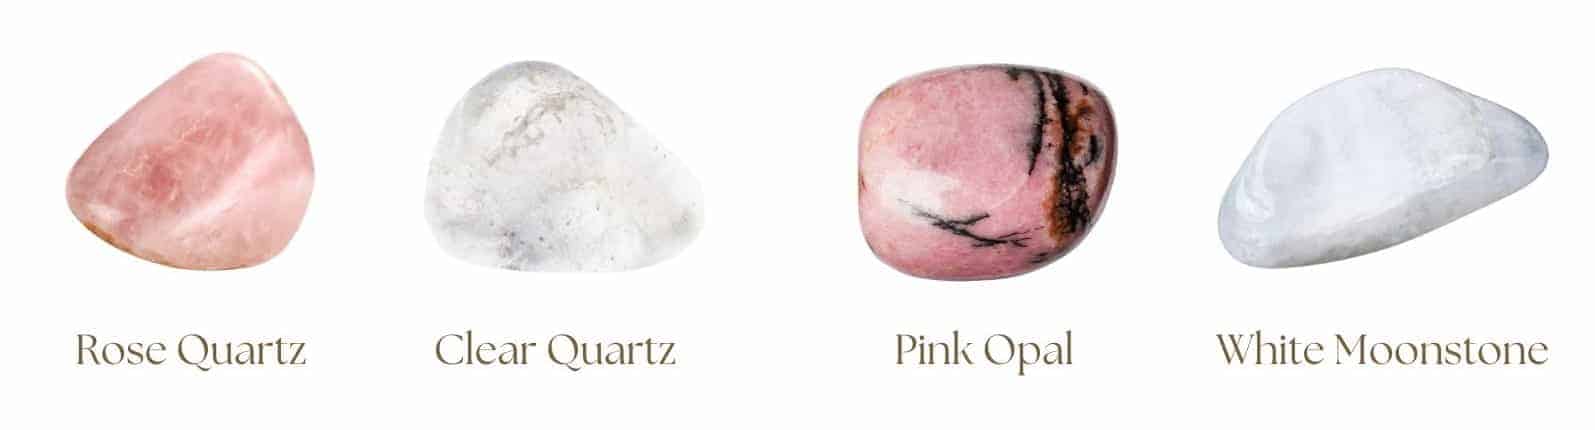 Bracelet de puissance pour femmes avec pierre de lune, opale rose, quartz clair et quartz rose - cadeau de fête des mères avec pierres précieuses